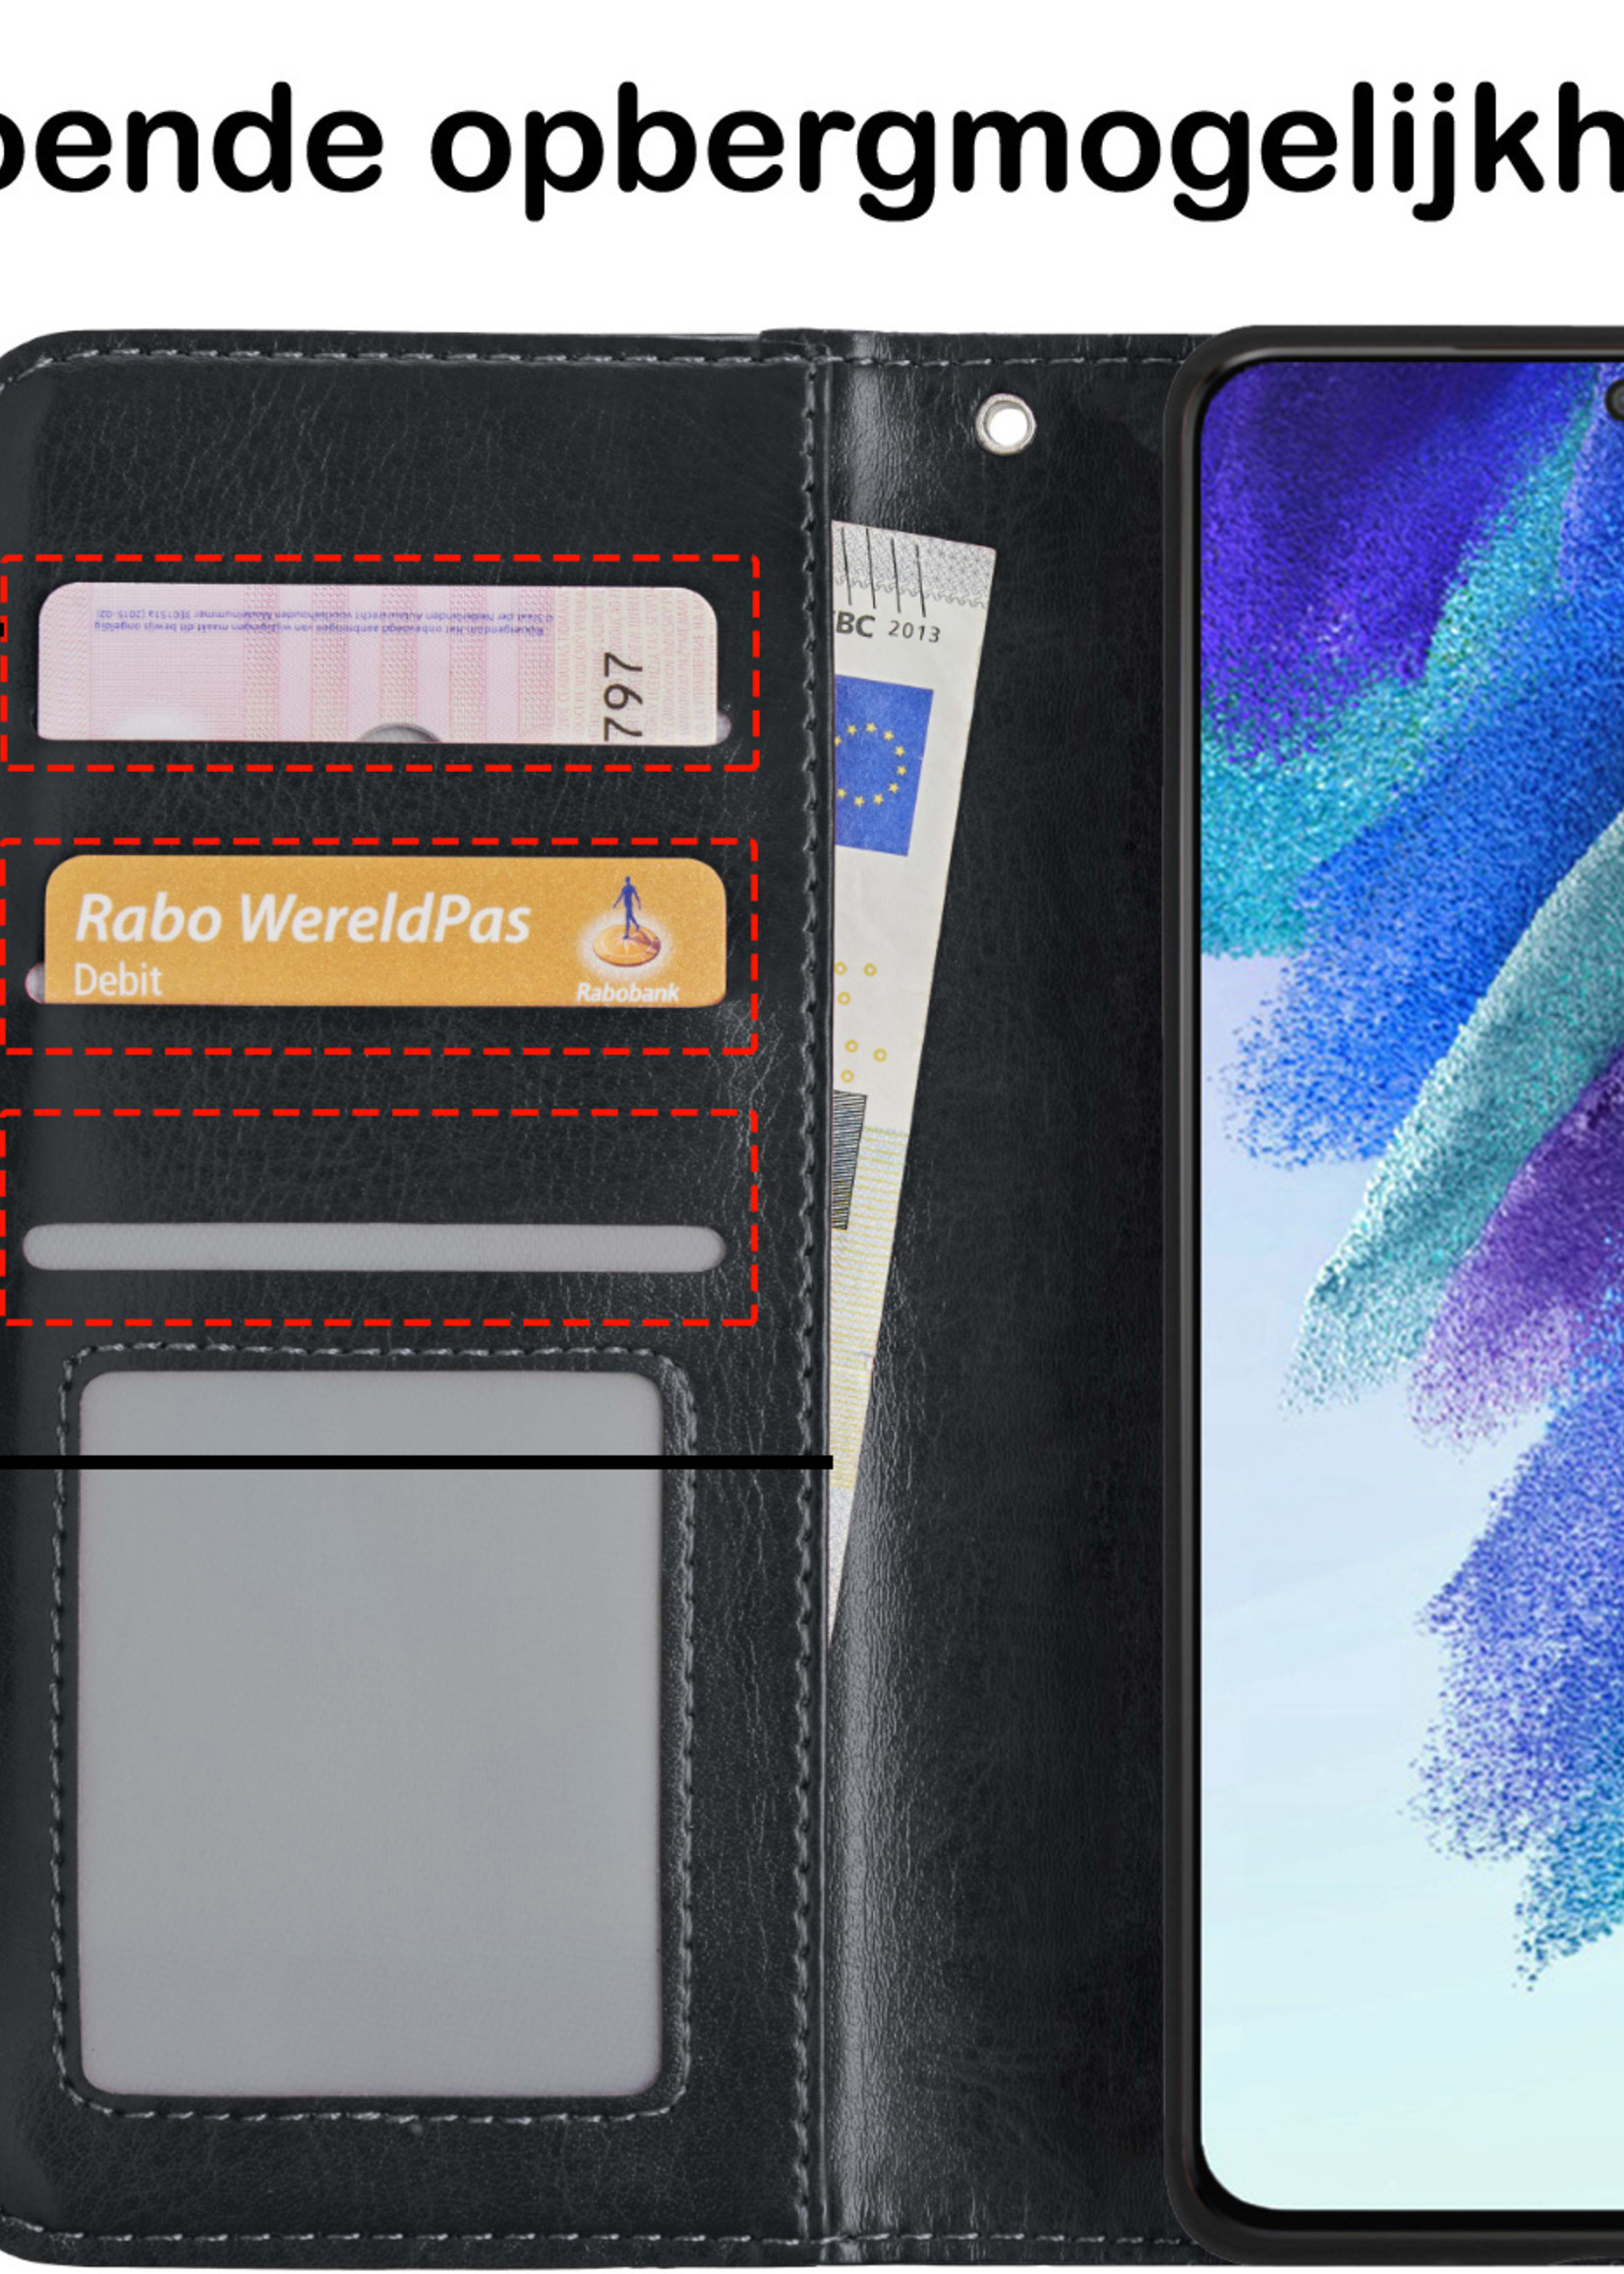 BTH Samsung S21 FE Hoesje Book Case Hoes - Samsung Galaxy S21 FE Case Hoesje Portemonnee Cover - Samsung S21 FE Hoes Wallet Case Hoesje - Zwart